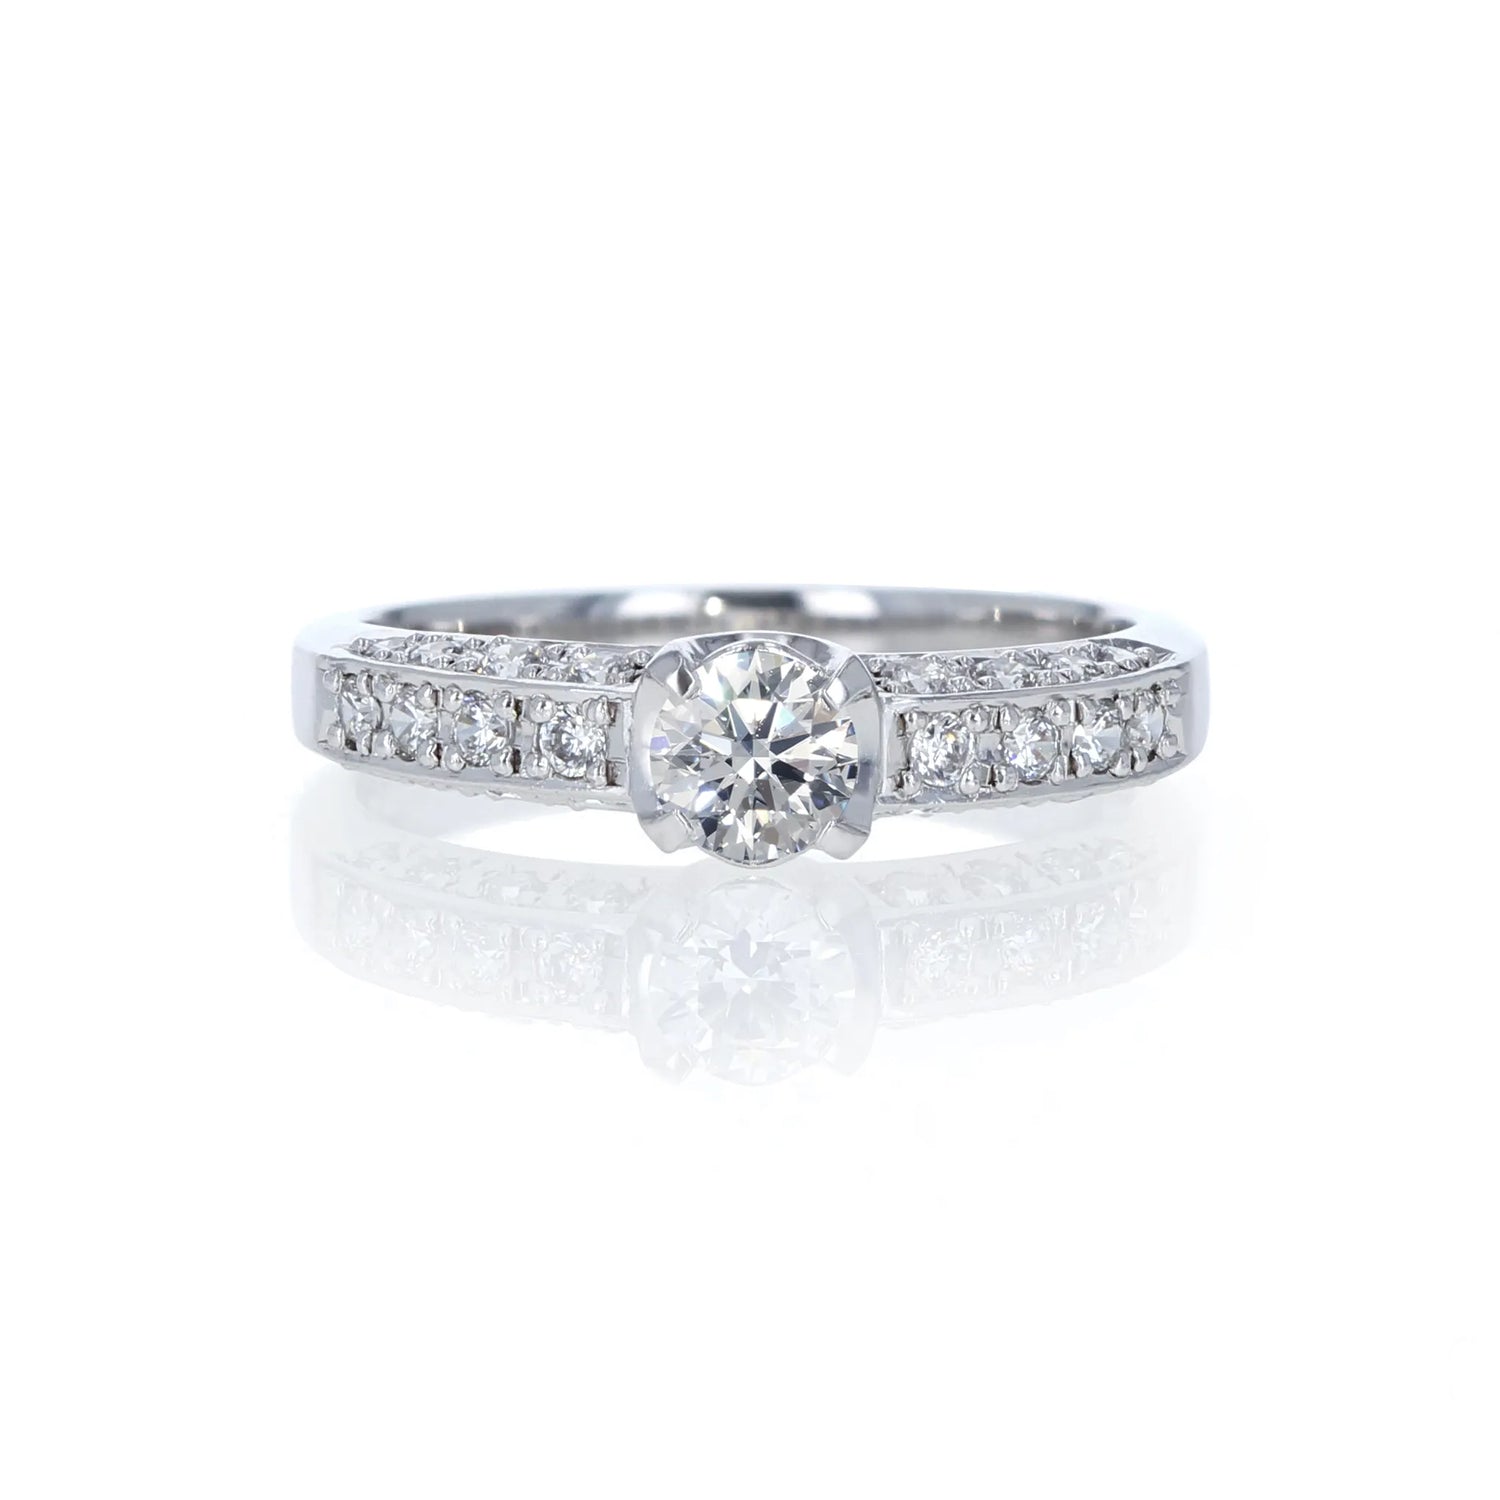 ダイヤモンドを敷き詰めた贅沢な輝き。熟練職人の丁寧な手仕事から生まれる、一生ものの婚約指輪。